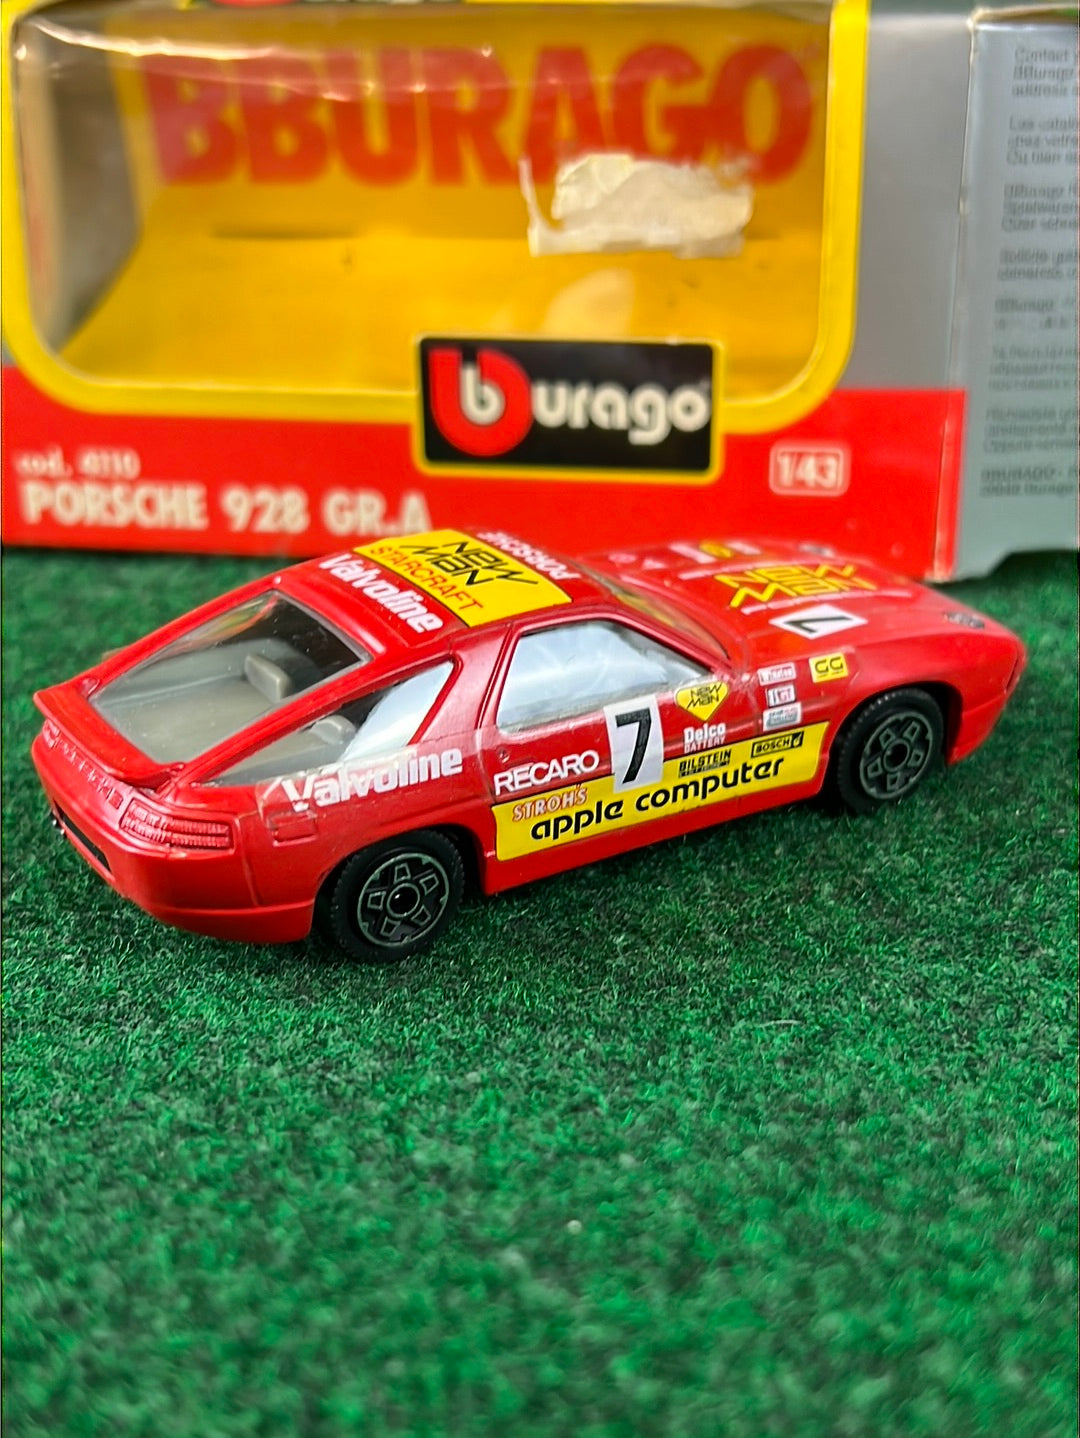 burago - Porsche 928 Diecast Toy Car Set of 3